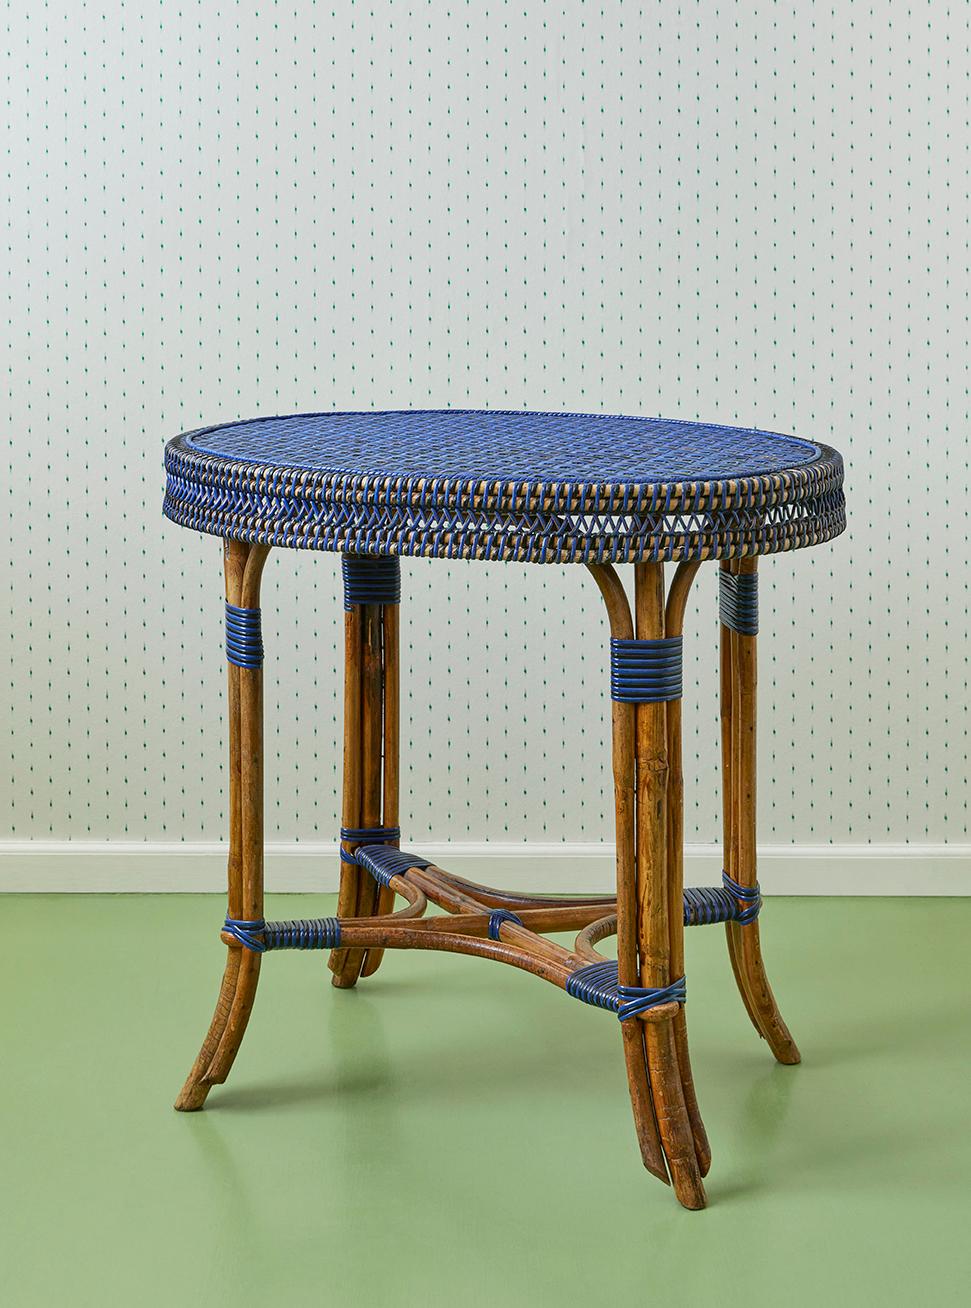 France, début du 20e siècle

Table en rotin bleu et noir. 

H 70 x L 55 x P 75 cm